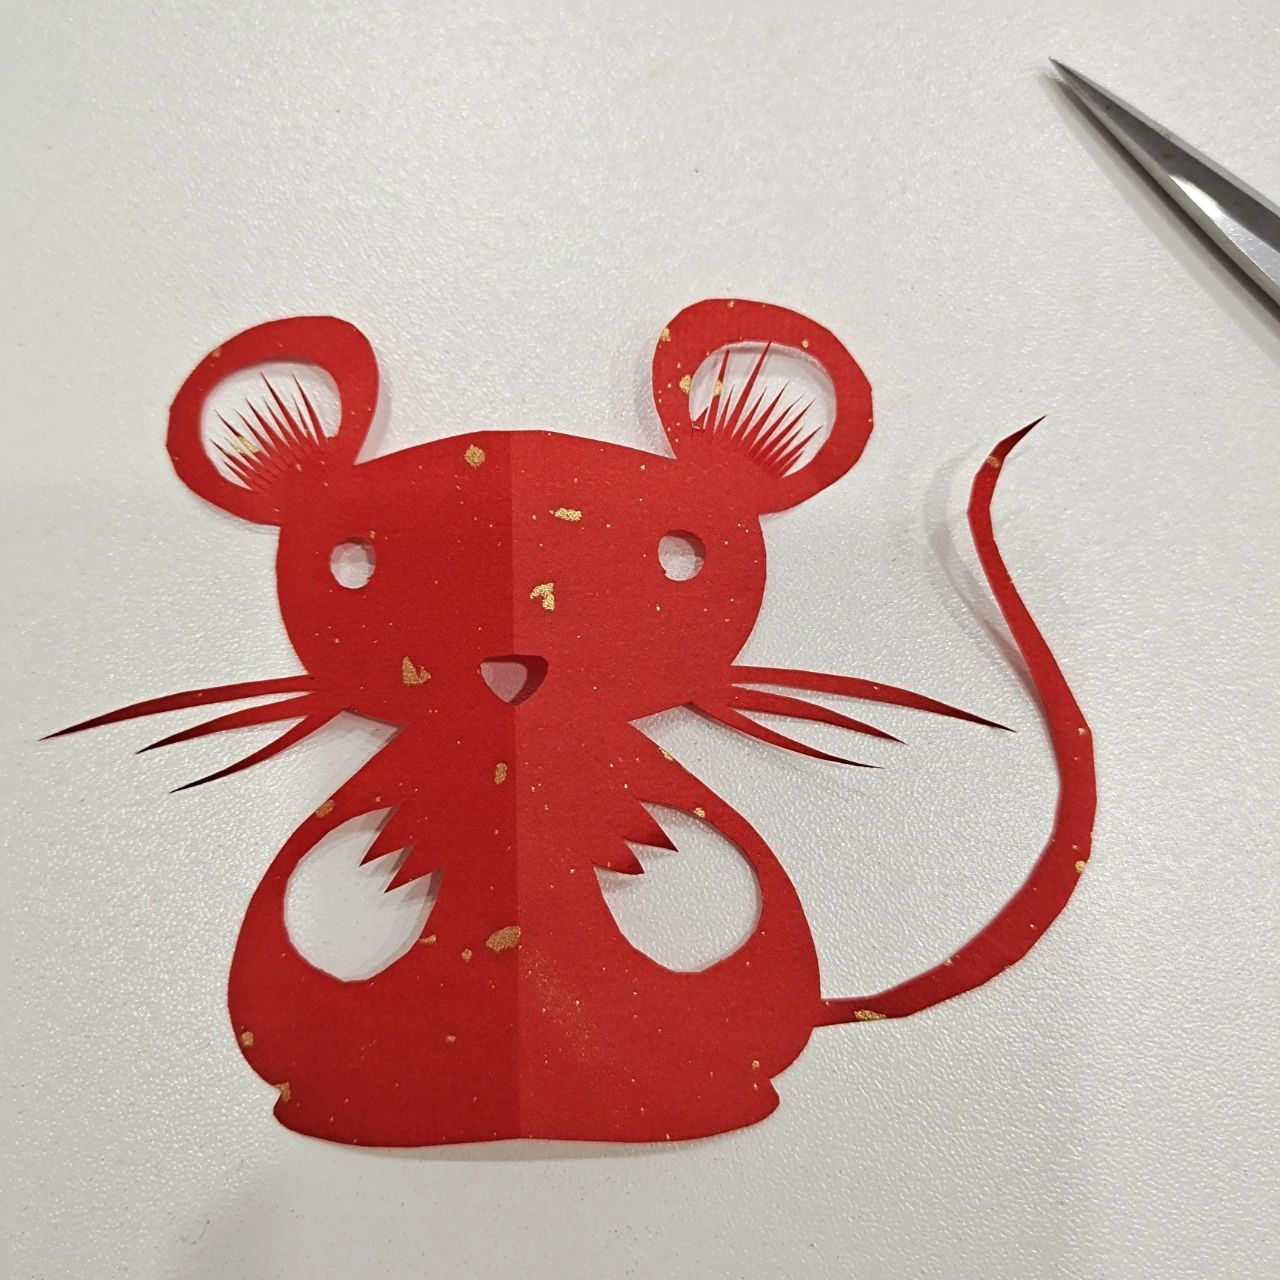 老鼠剪纸步骤图片